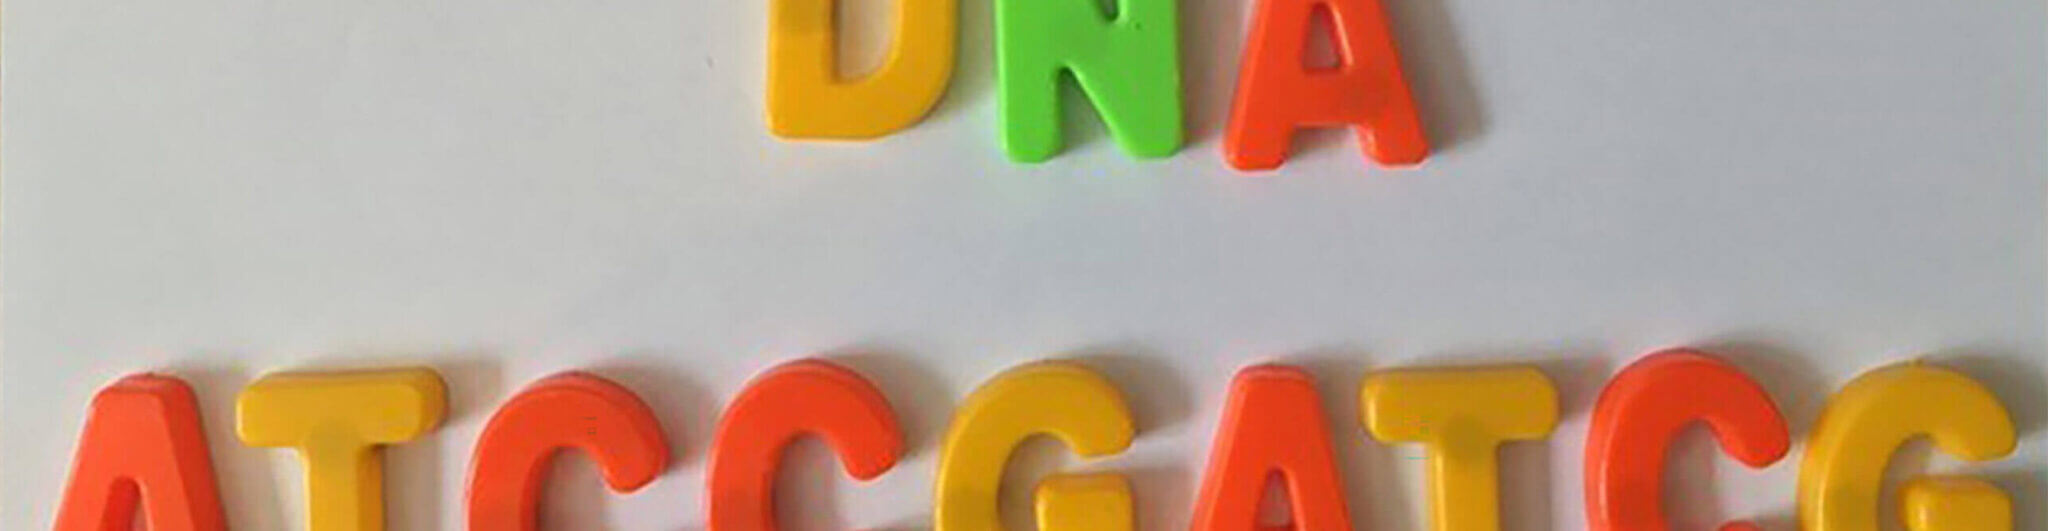 Children's fridge magnetic letters spelling DNA DNA ATCCGATC